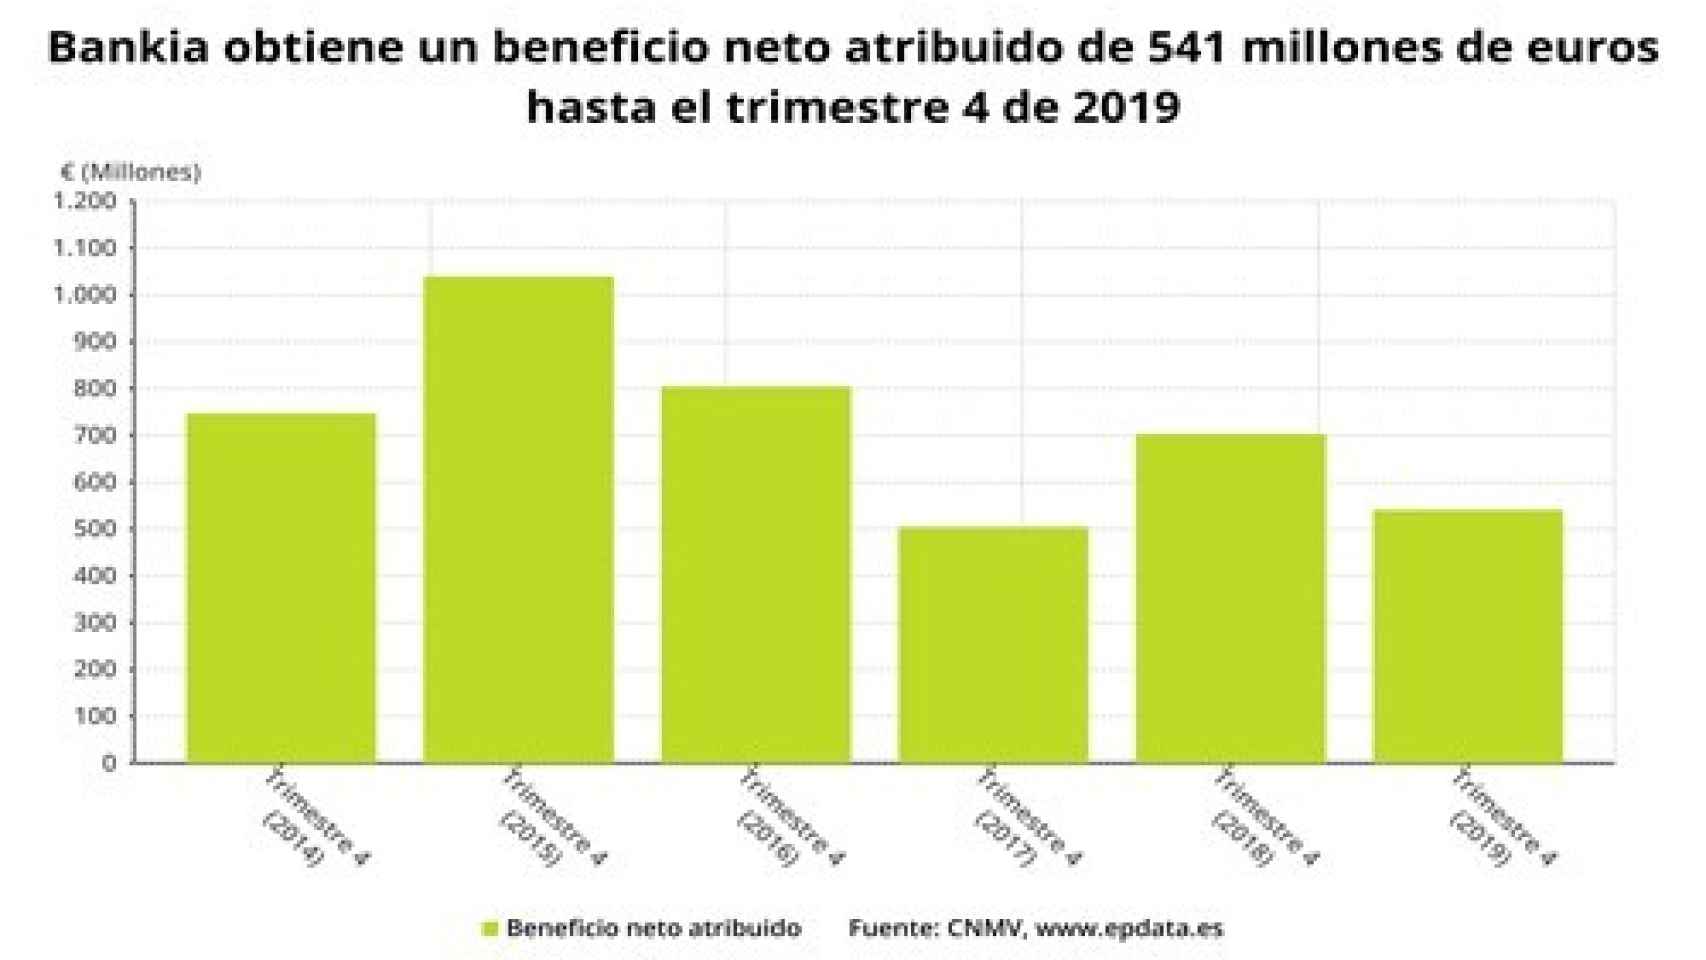 Resultados de Bankia en 2019.